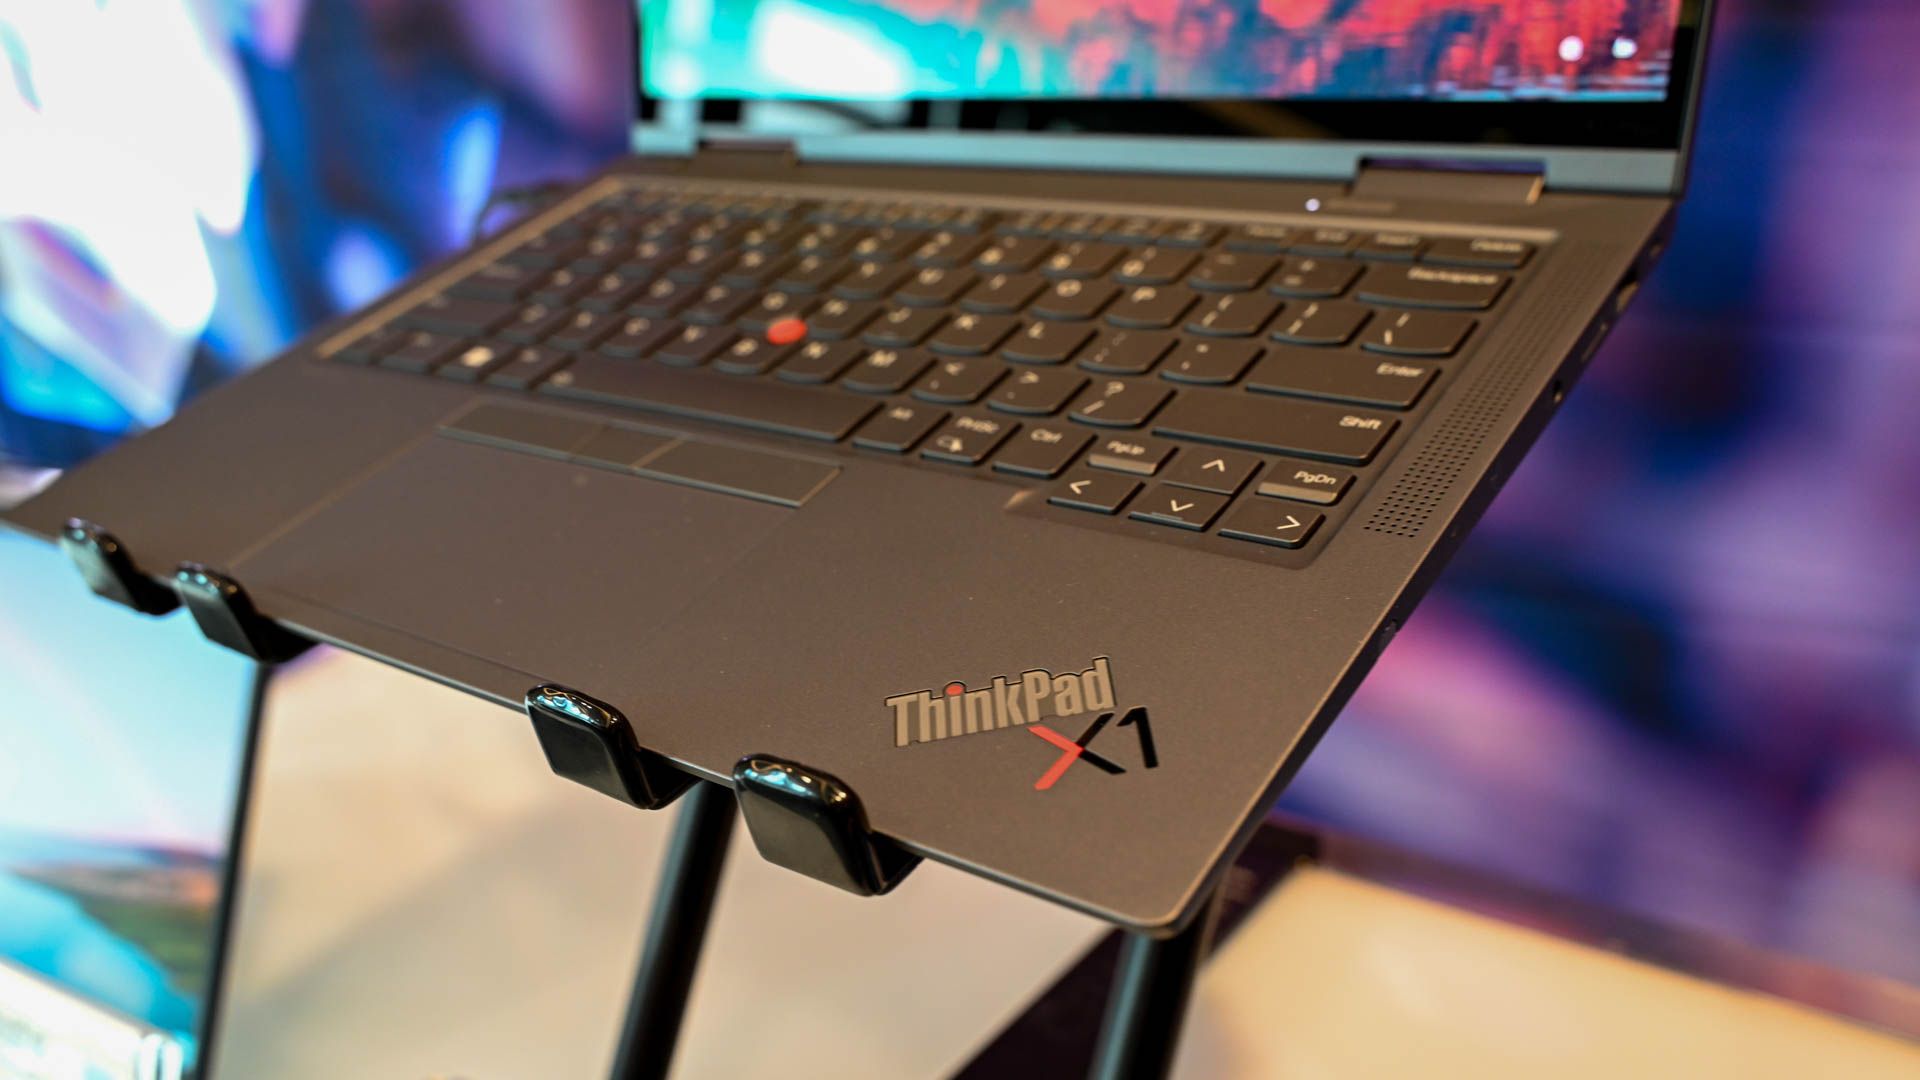 Lenovo ThinkPad x1 em um suporte para laptop.